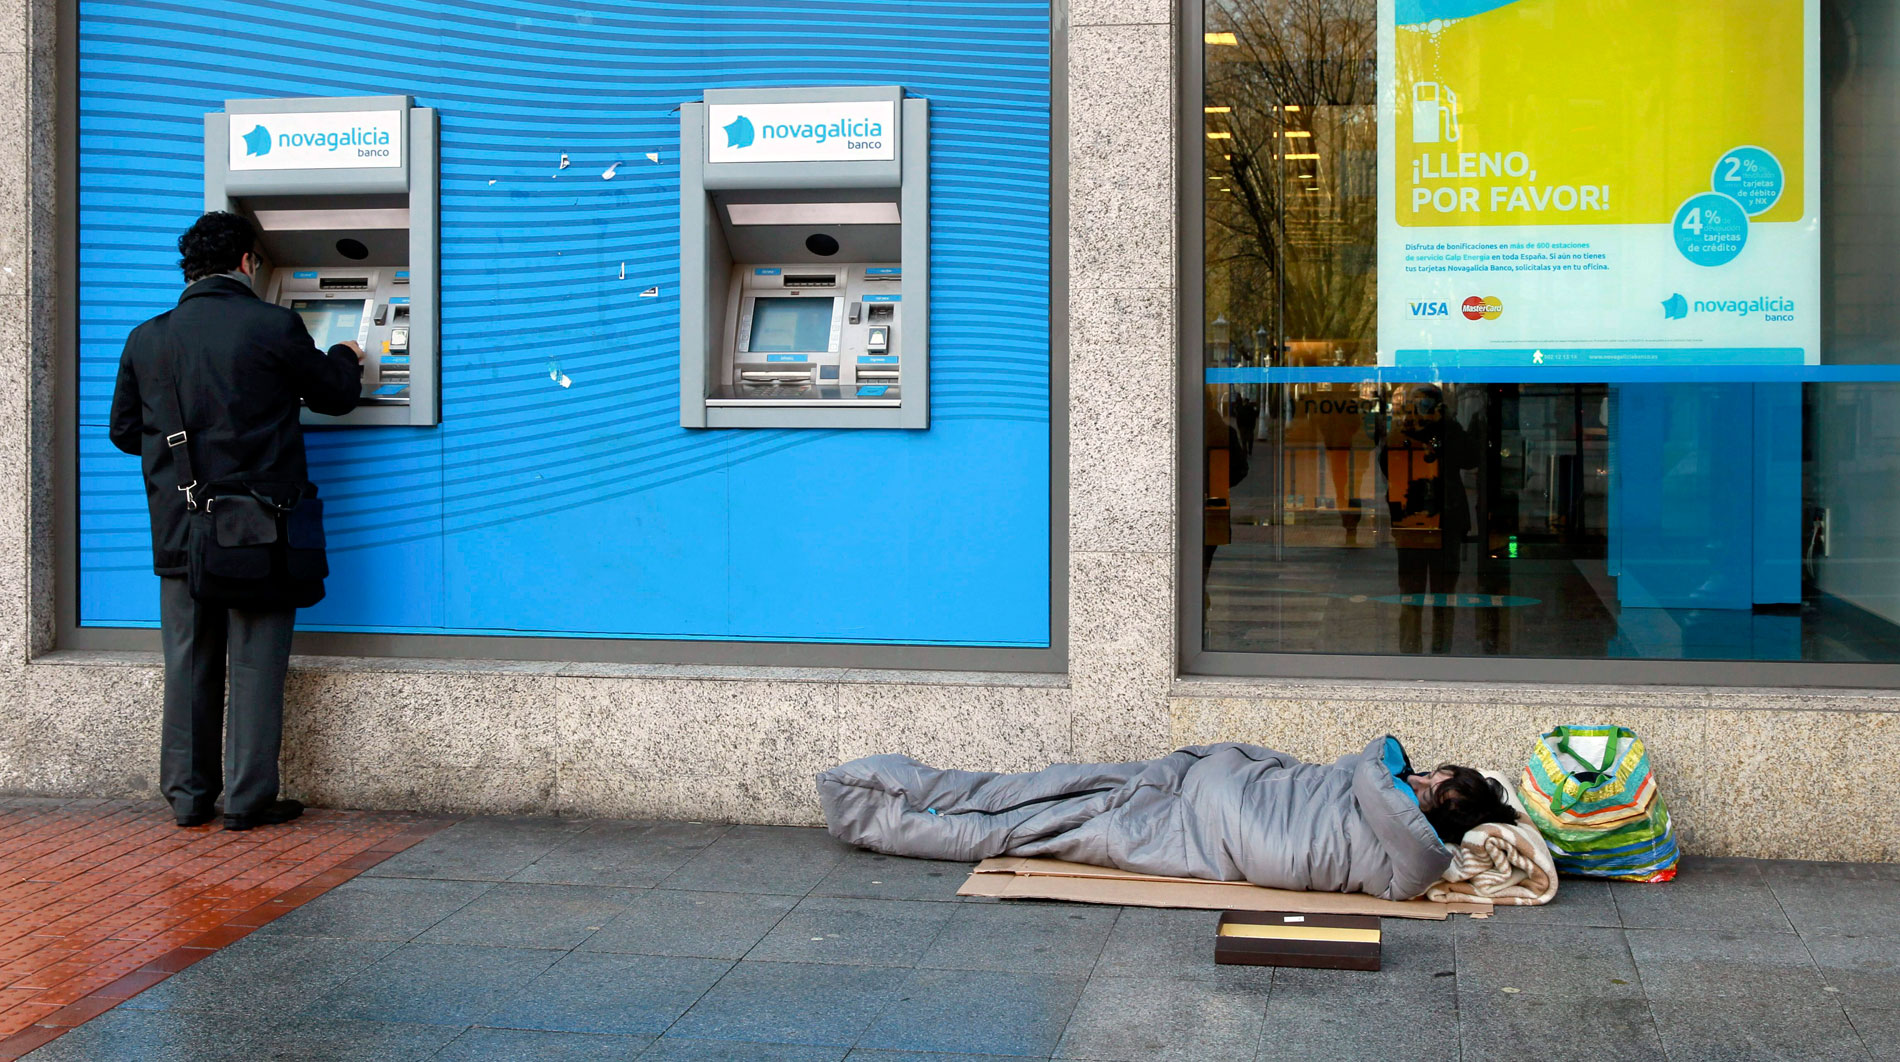 España registra un millón de pobres más que hace una década